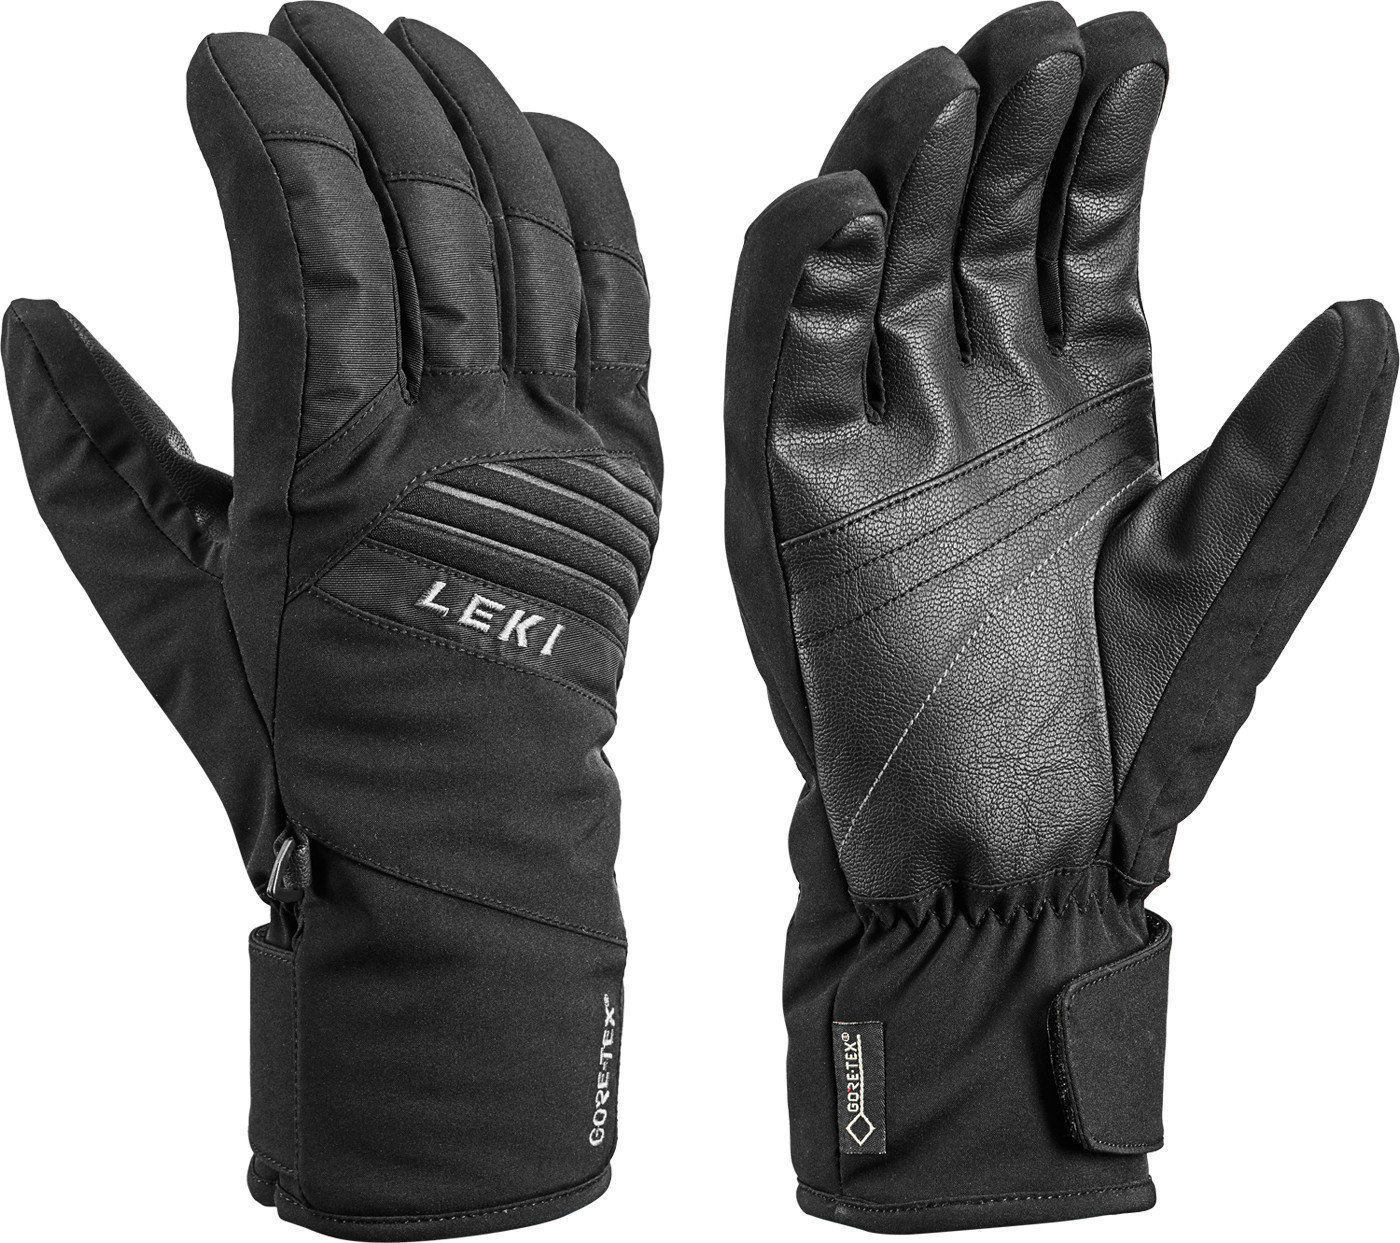 Smučarske rokavice Leki Space GTX Black 9 Smučarske rokavice